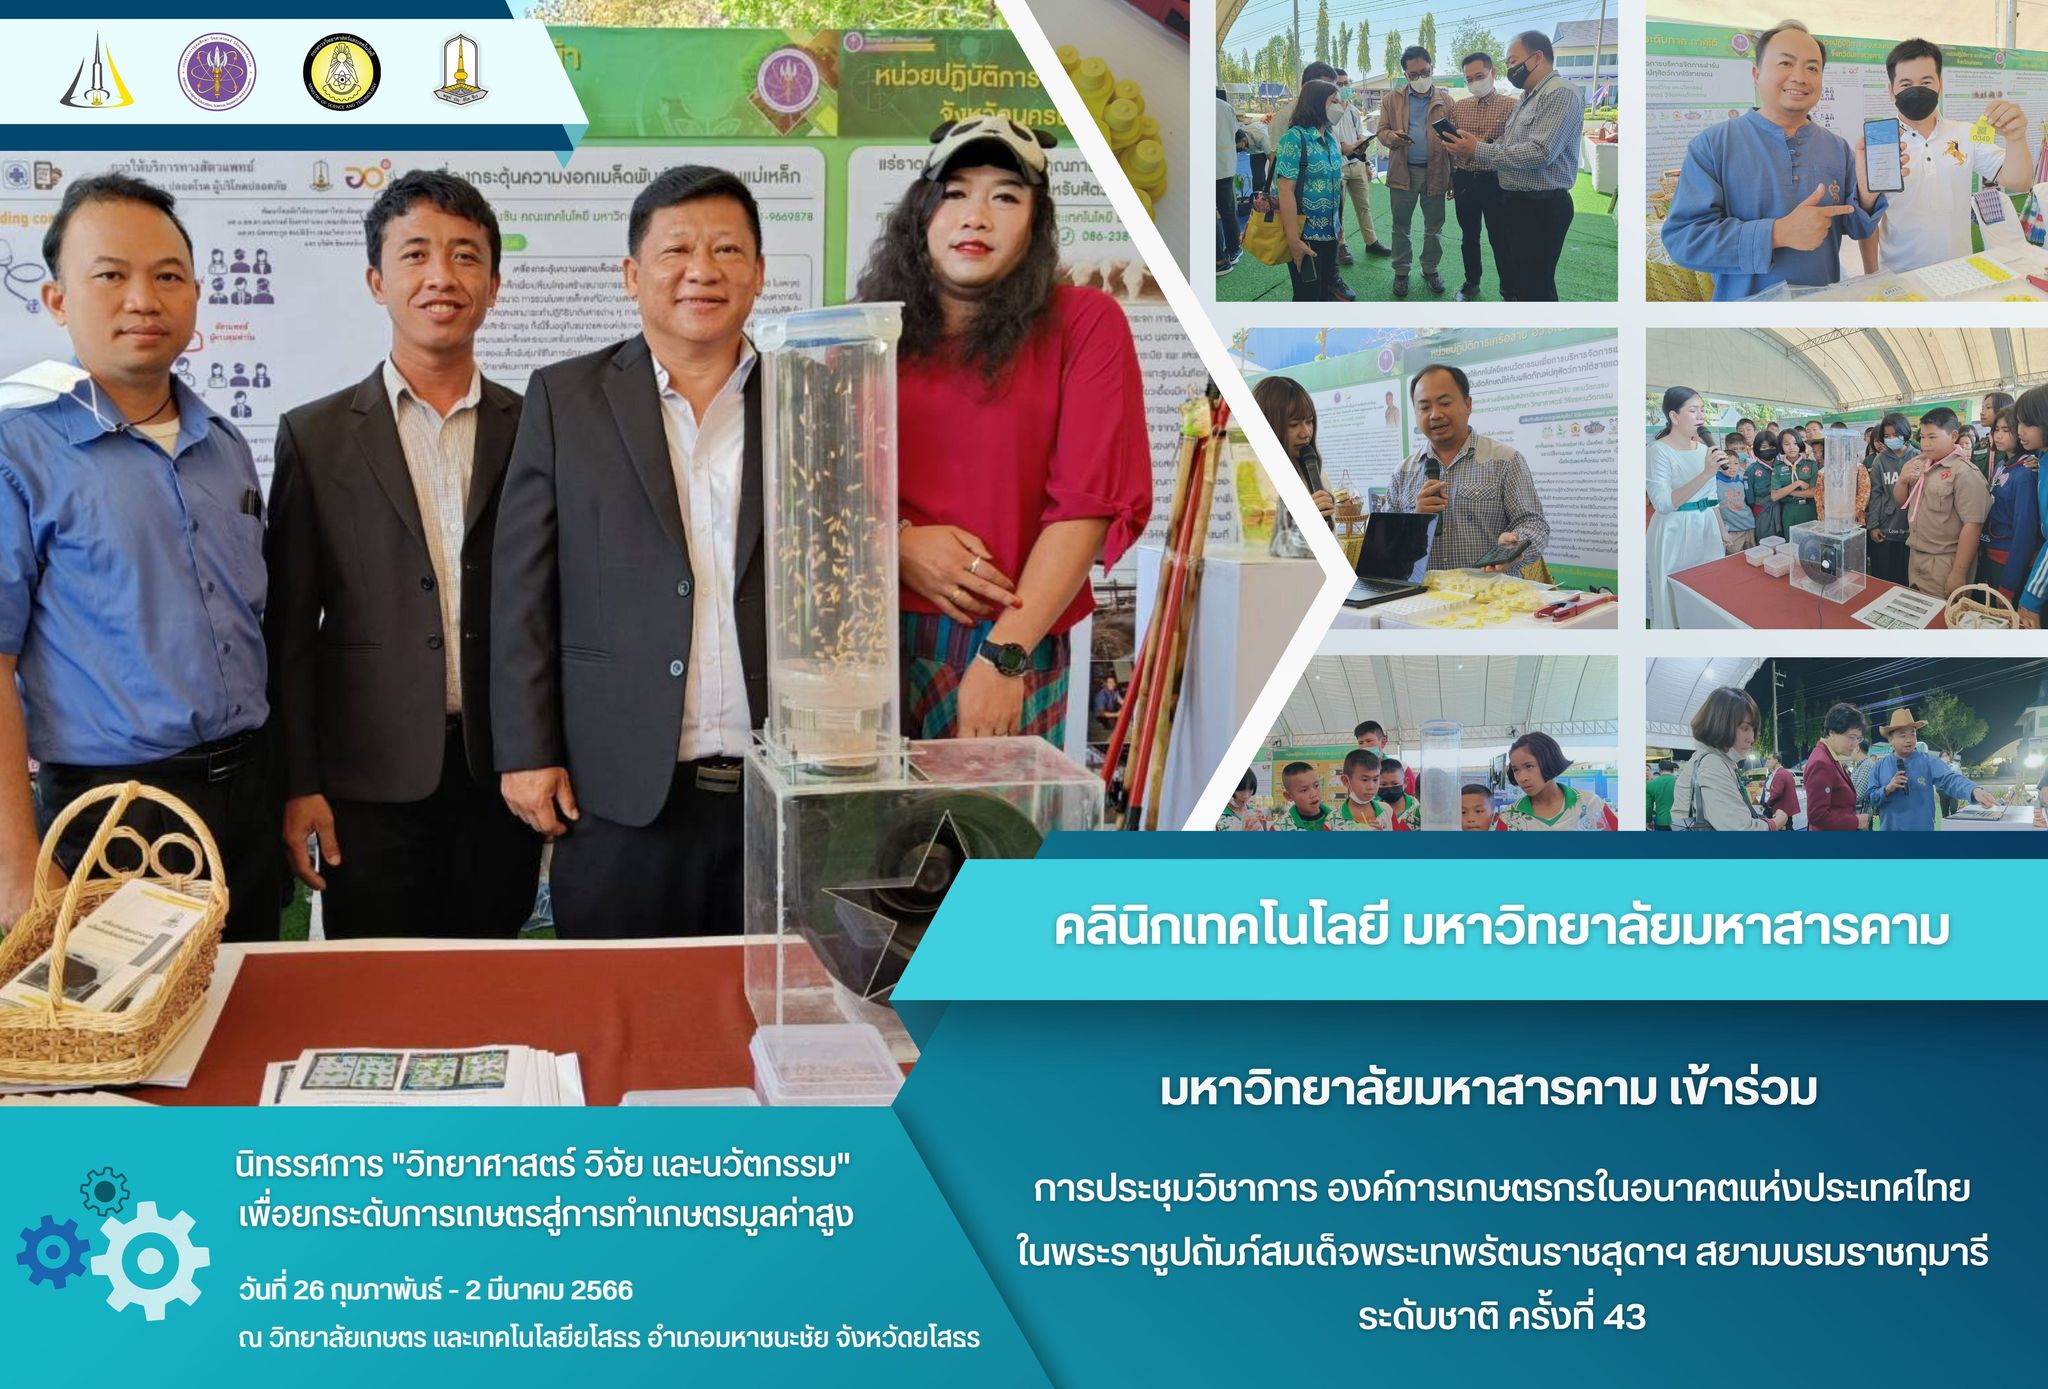 การประชุมวิชาการ องค์การเกษตรกรในอนาคตแห่งประเทศไทยในพระราชูปถัมภ์สมเด็จพระเทพรัตนราชสุดาฯ สยามบรมราชกุมารี (อกท.) ระดับชาติ ครั้ง ที่ 43